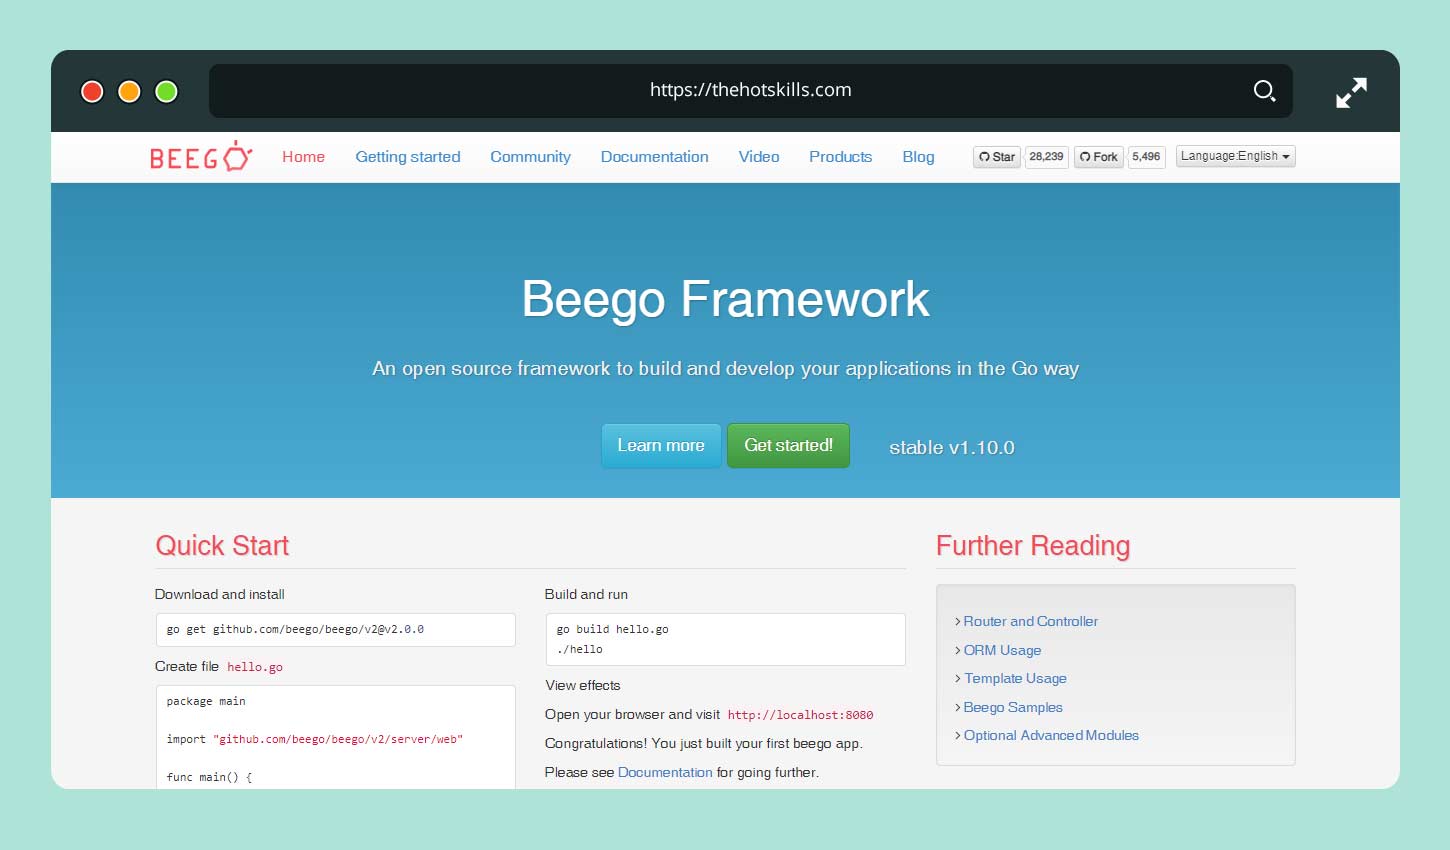 Beego Framework